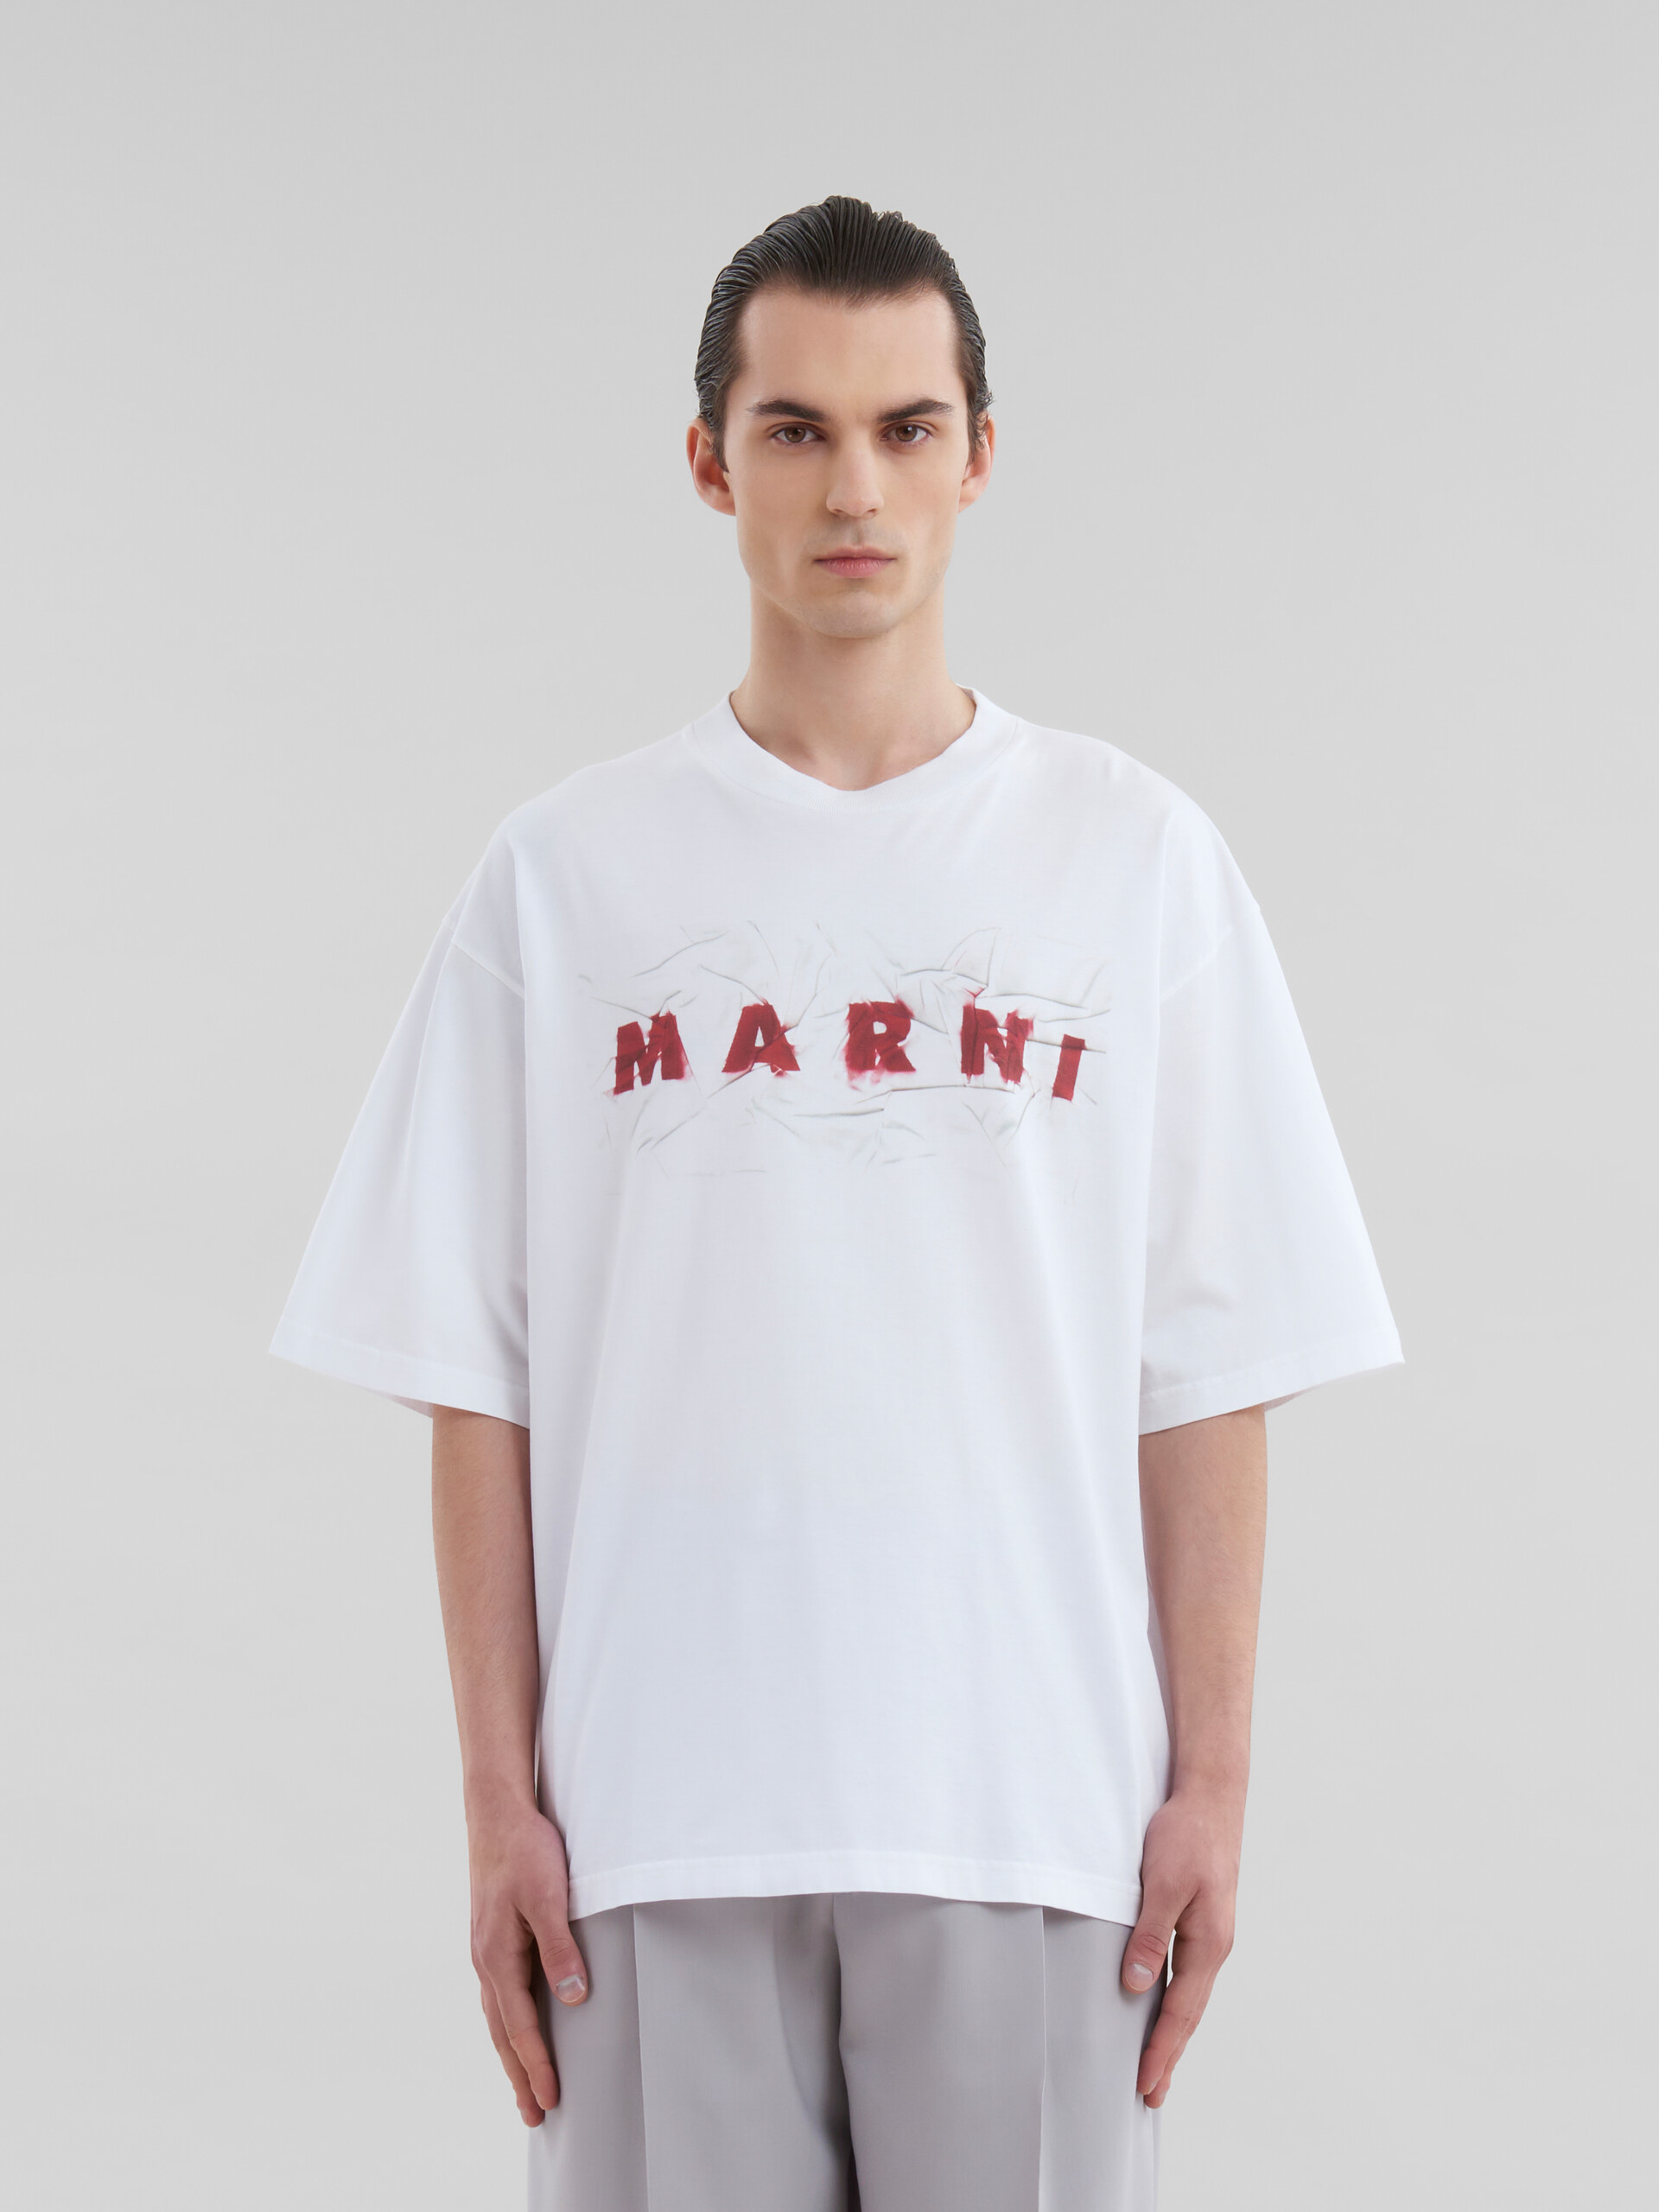 T-shirt en coton biologique blanc avec logo Marni froissé - T-shirts - Image 2